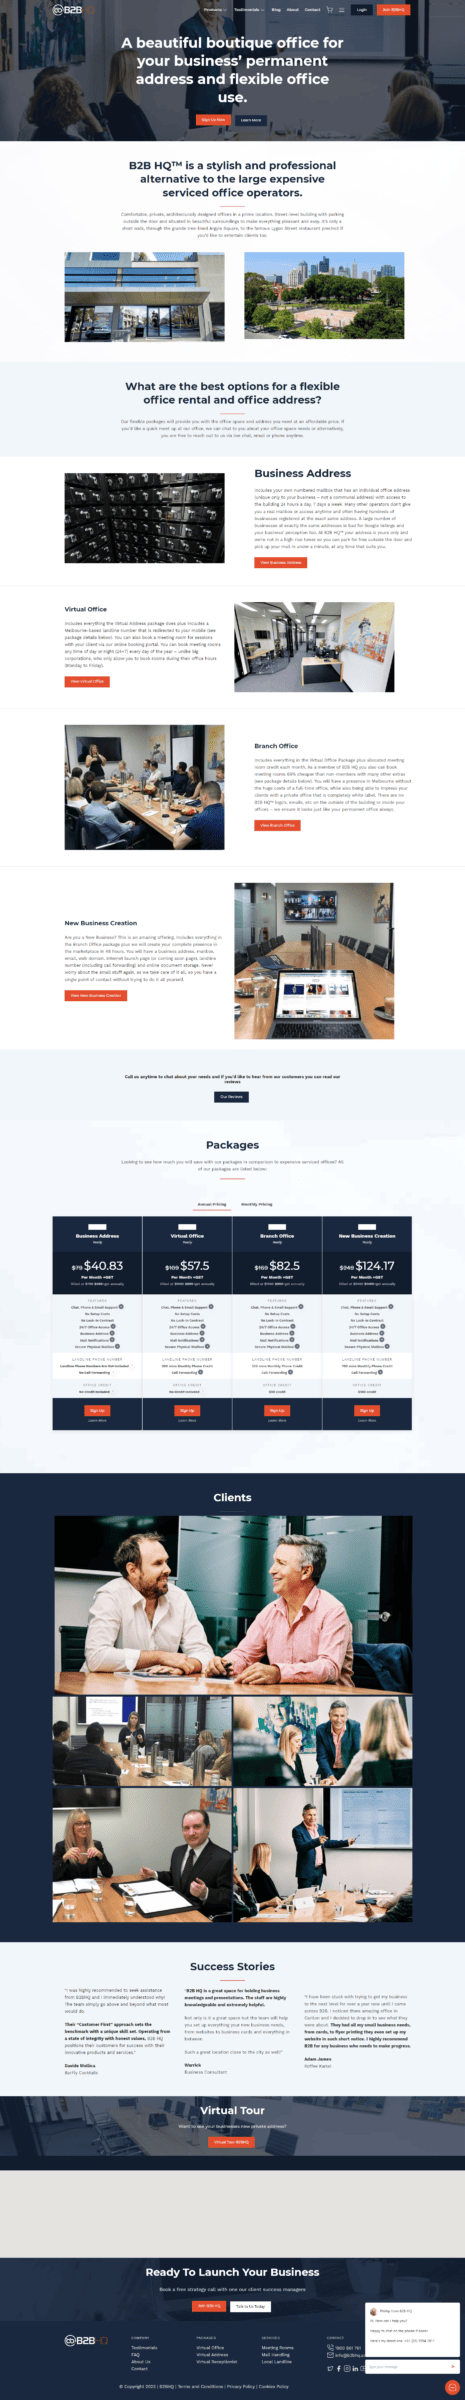 A website design for a business.